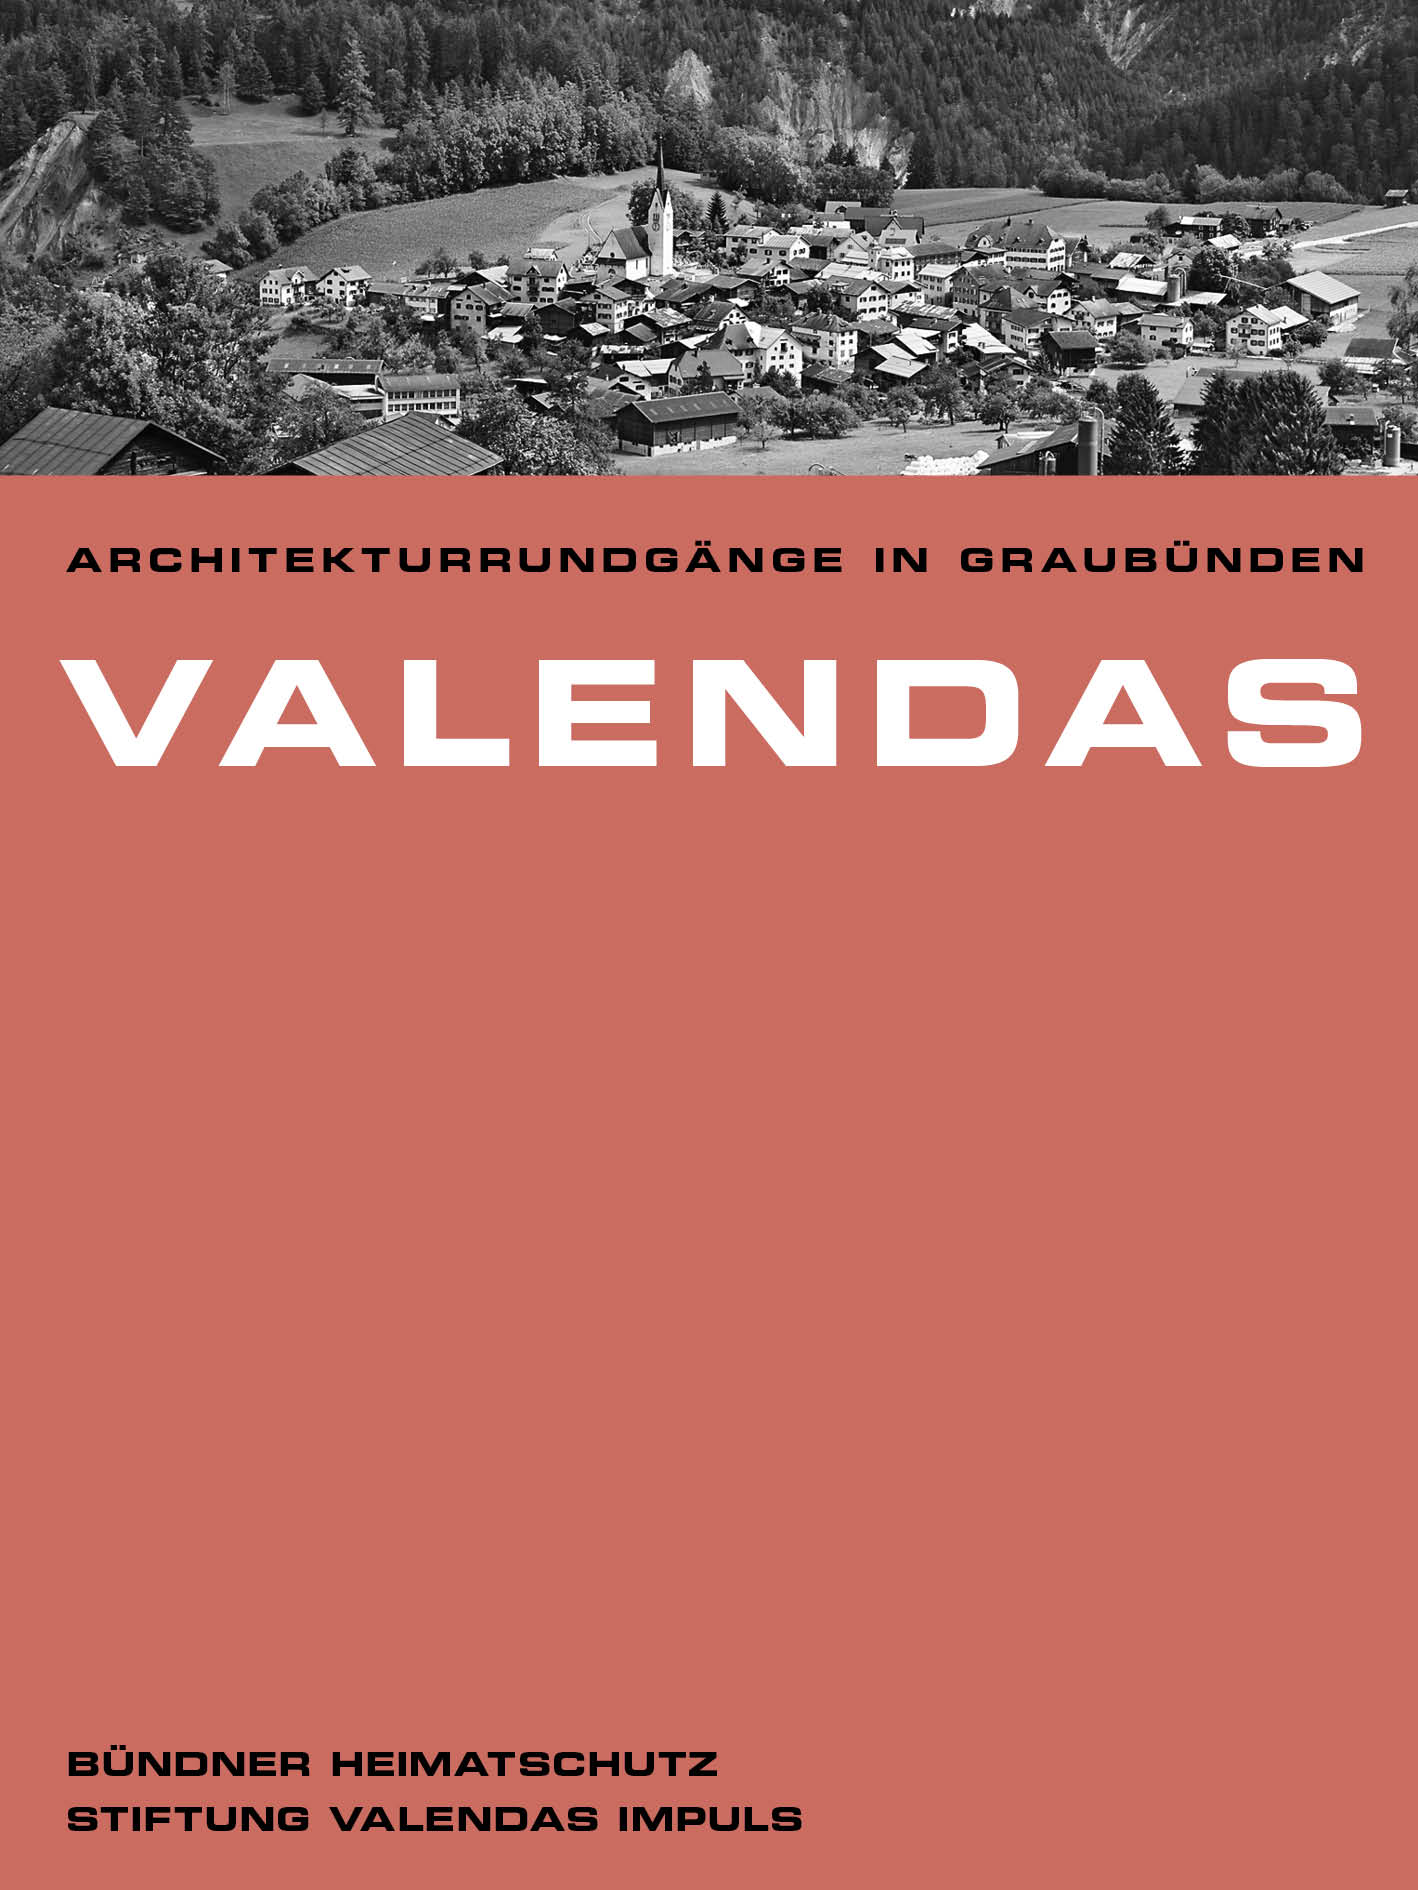 Ludmila Seifert (Texte), Ralph Feiner (Fotografien): Valendas, Chur, 2015. Fr. 10.-; ISBN 978-3-85637-473-0